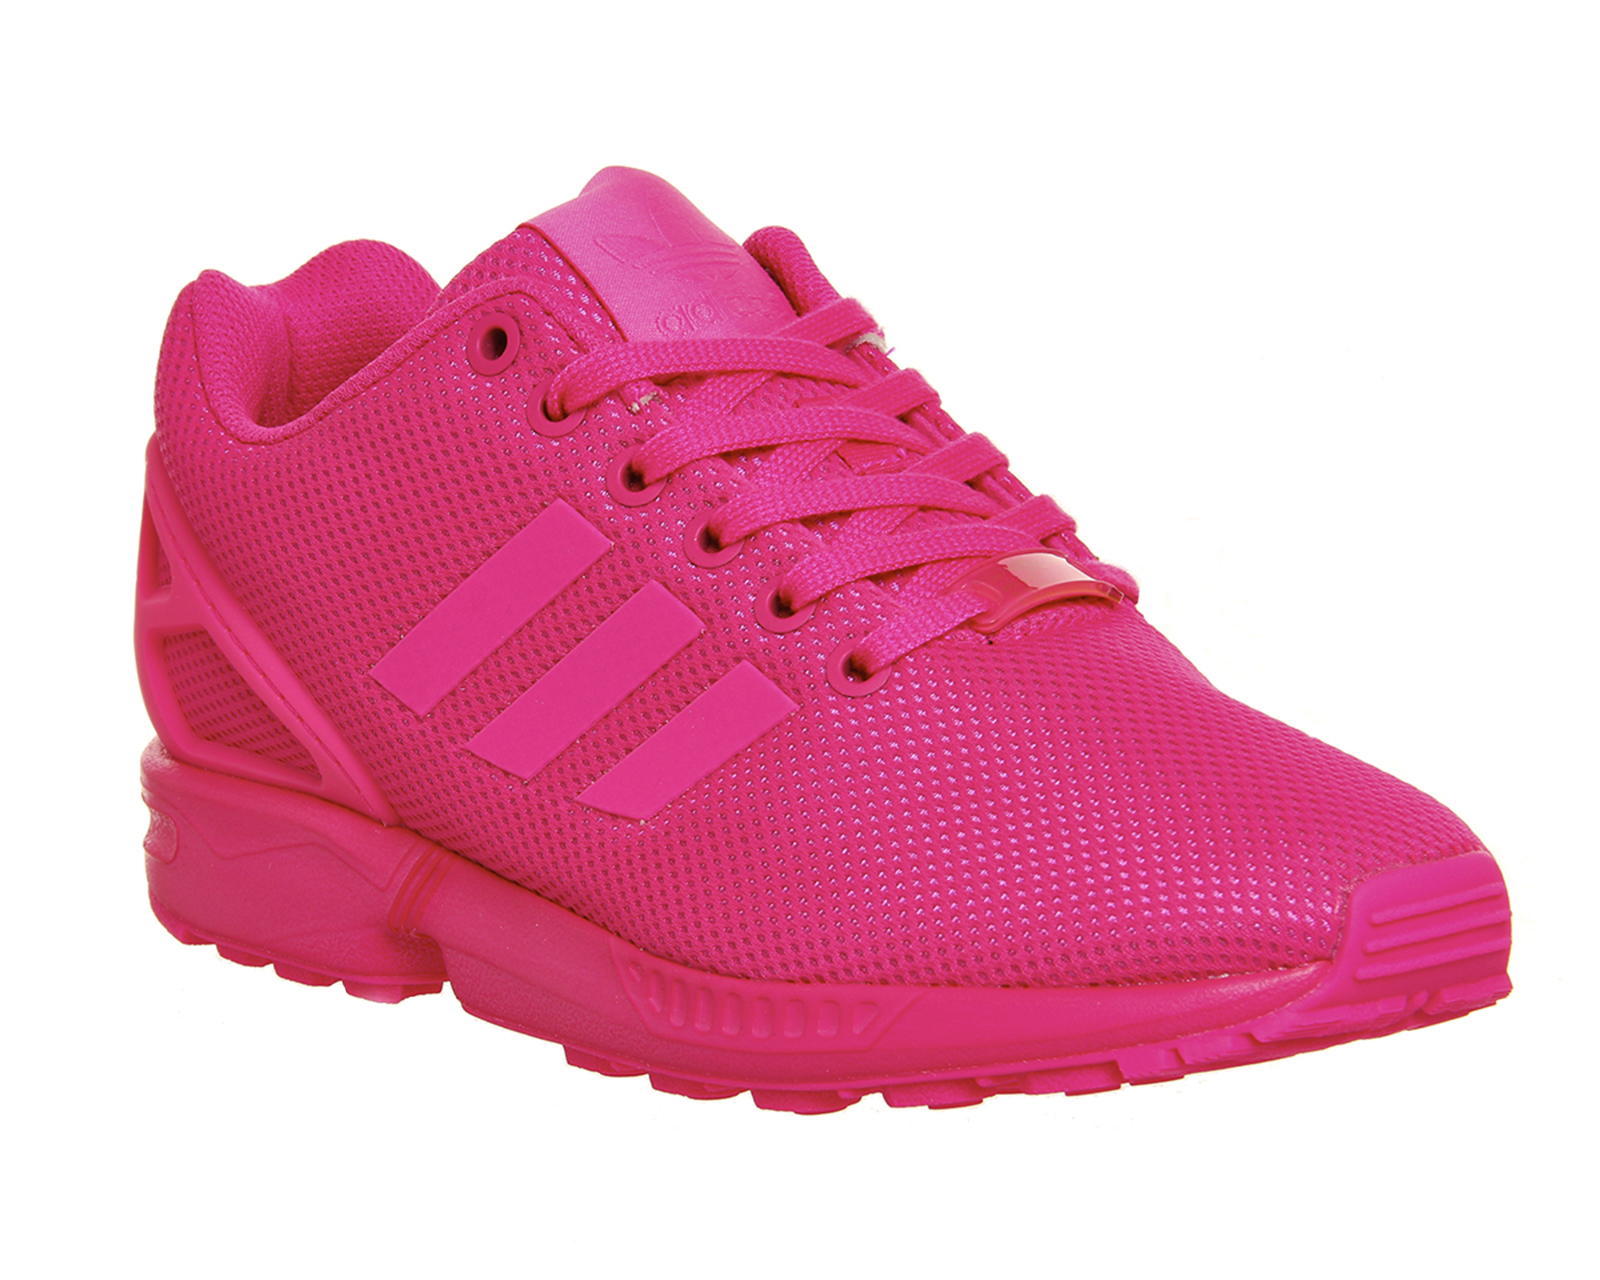 adidas zx flux pink womens